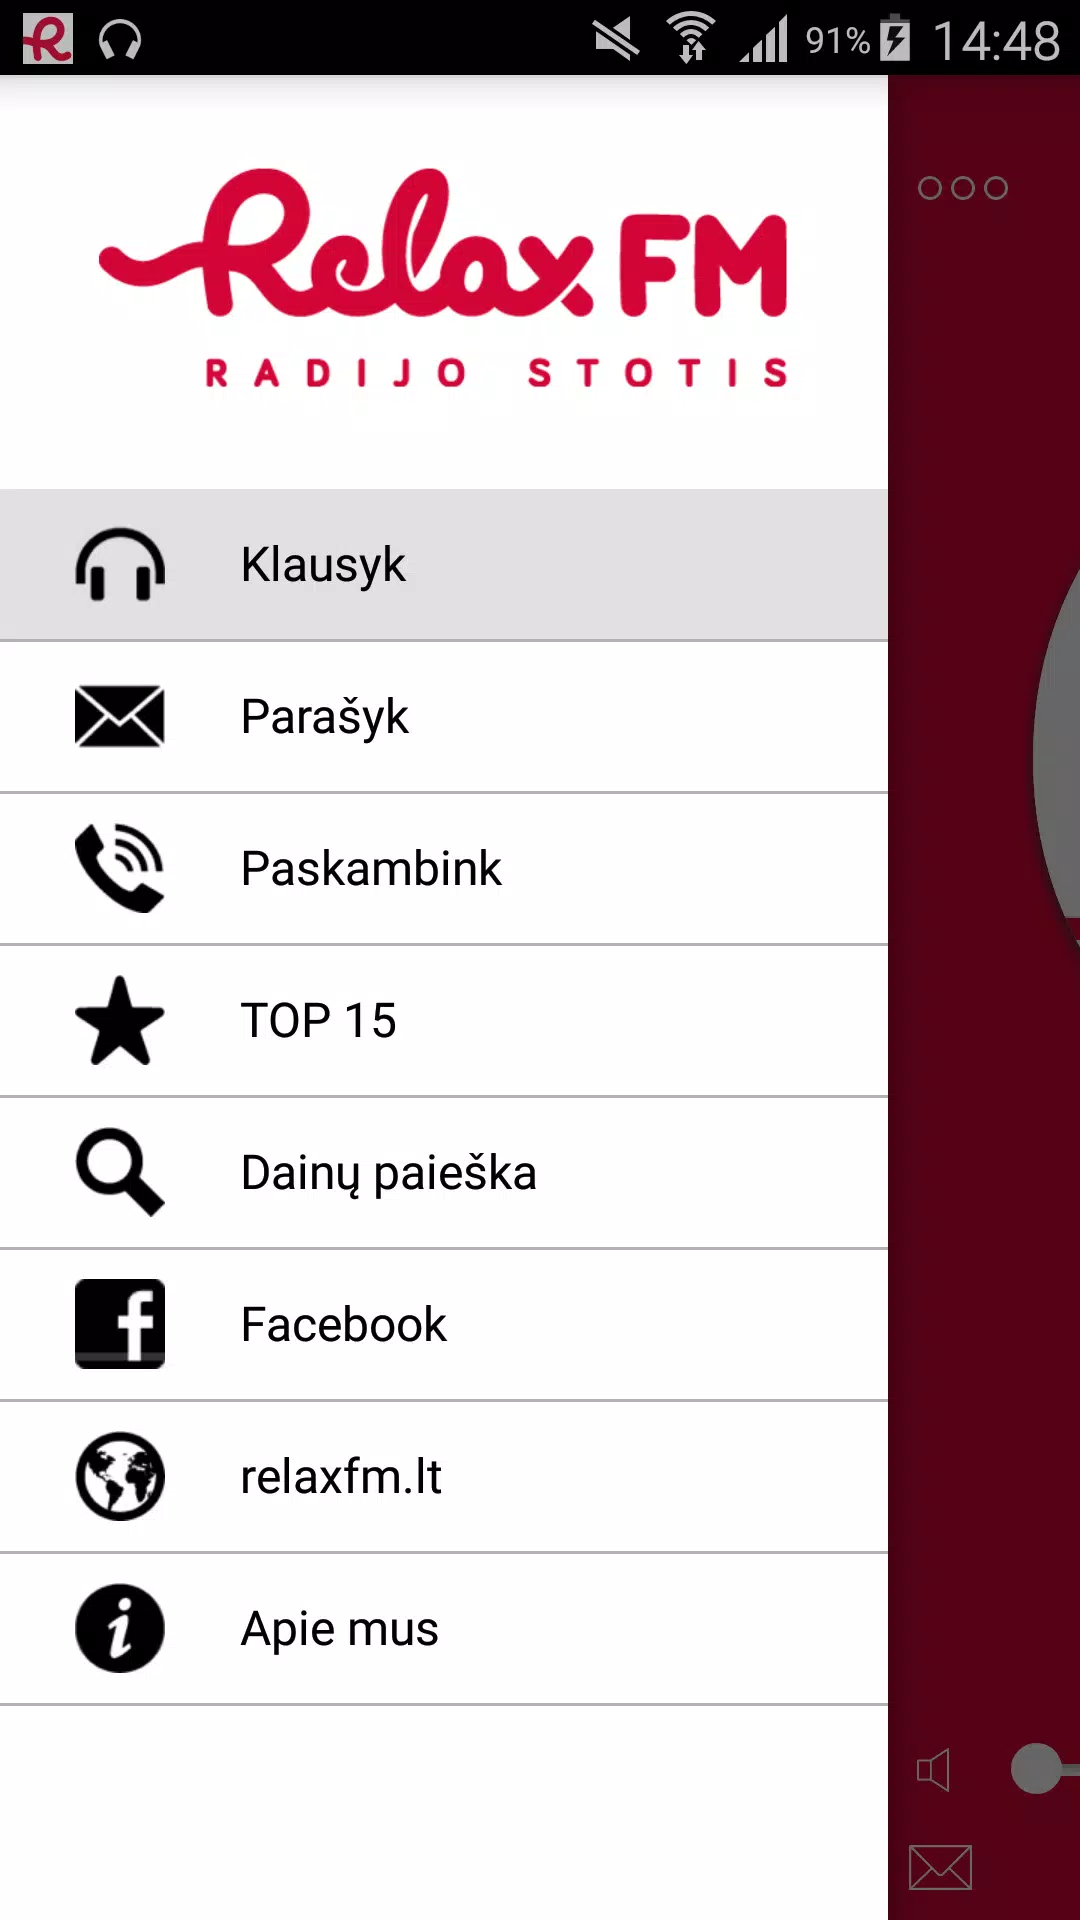 Radijo stotis Relax FM APK for Android Download